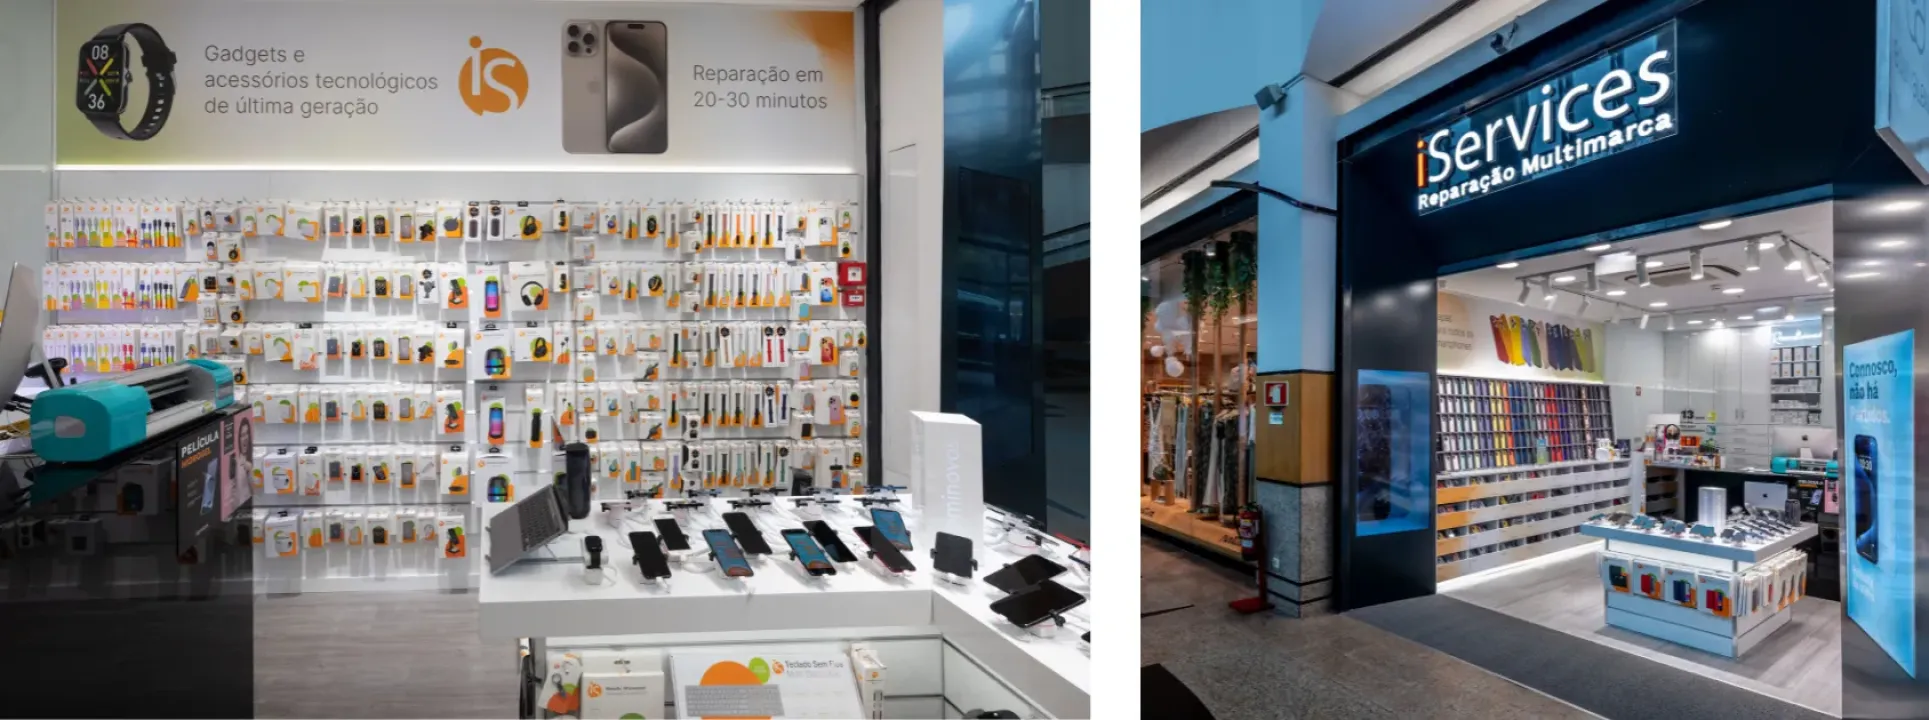 iServices abre segunda tienda en Guimarães